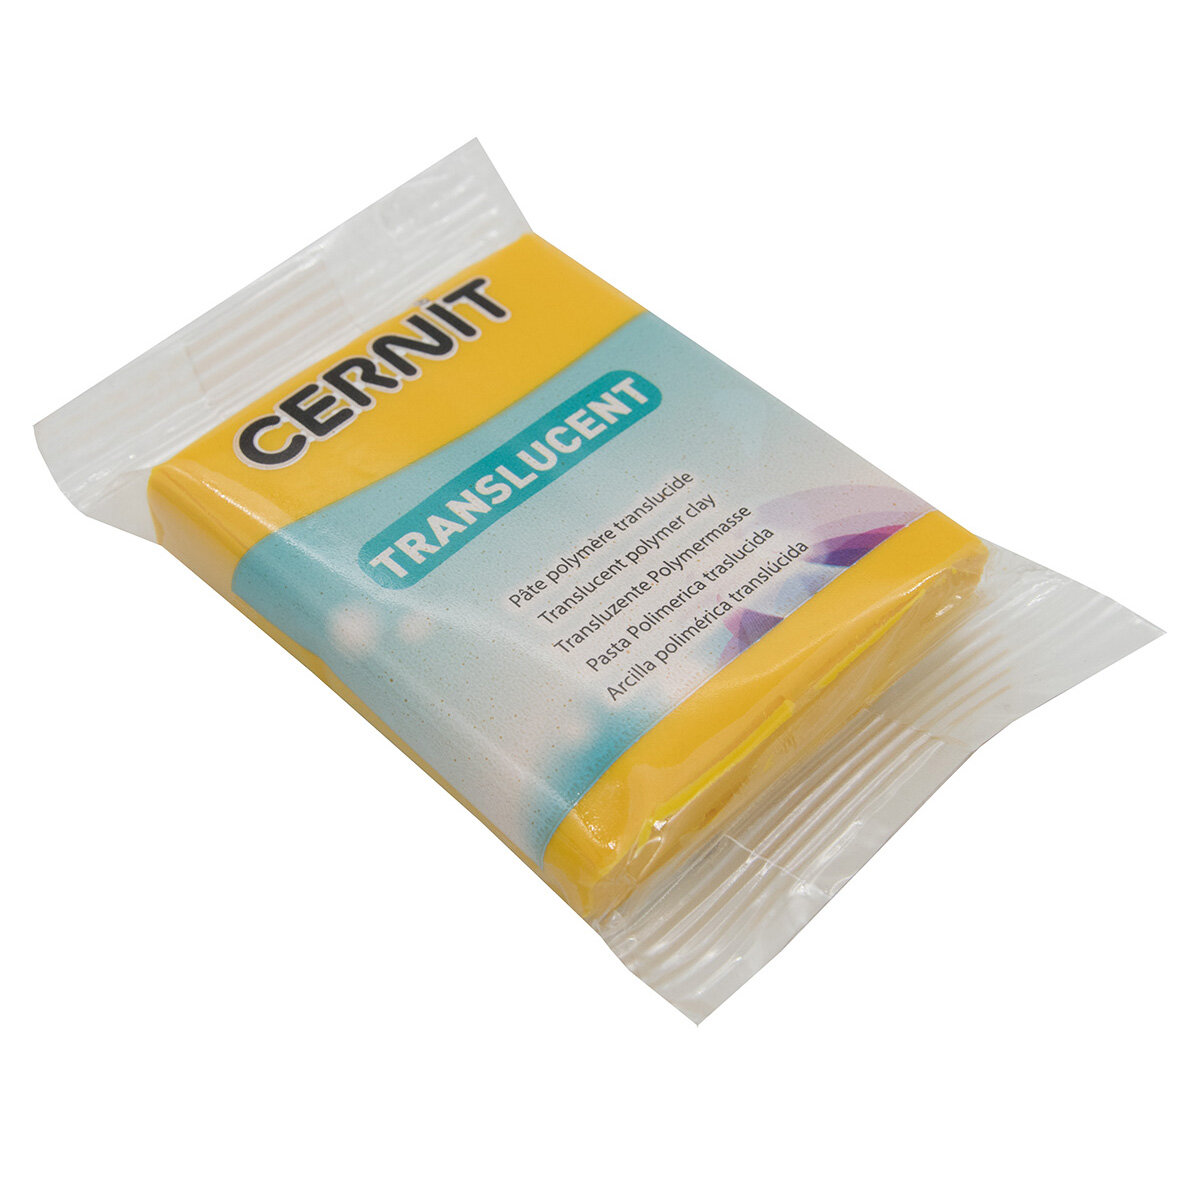 Пластика полимерная запекаемая 'Cernit 'TRANSLUCENT' прозрачная, 56 г (721 прозрачный янтарь)